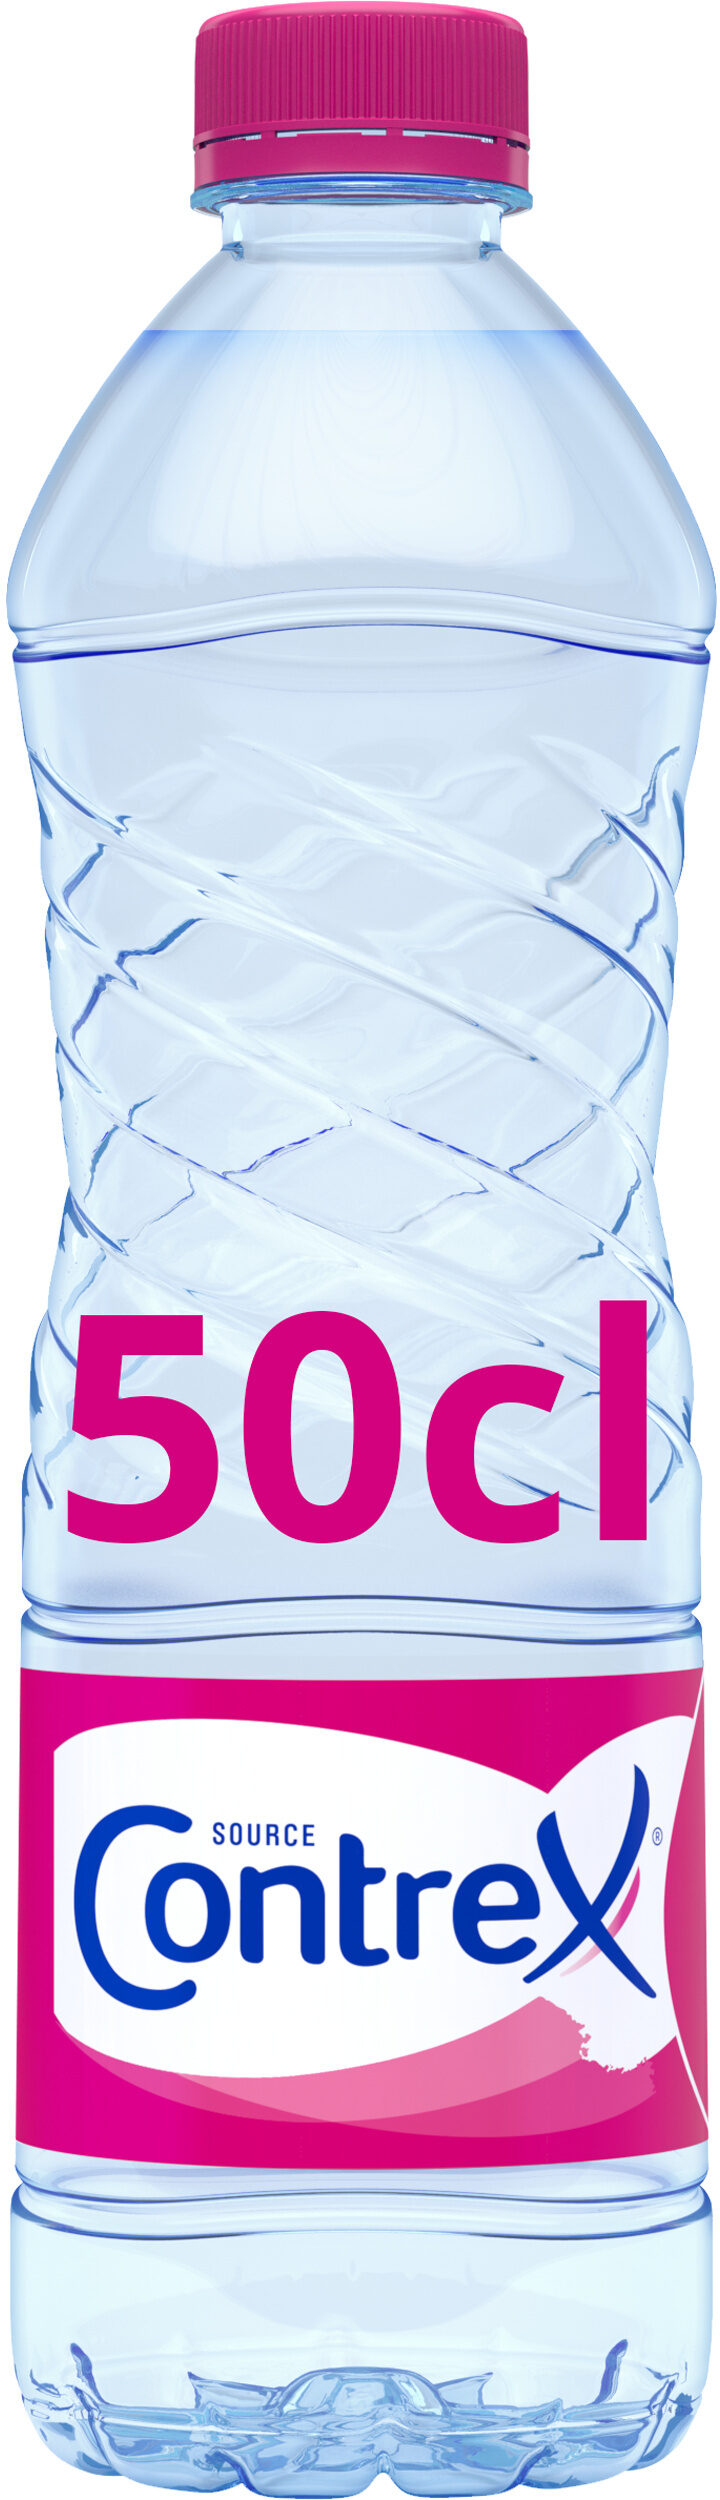 eau minérale naturelle - Producto - fr